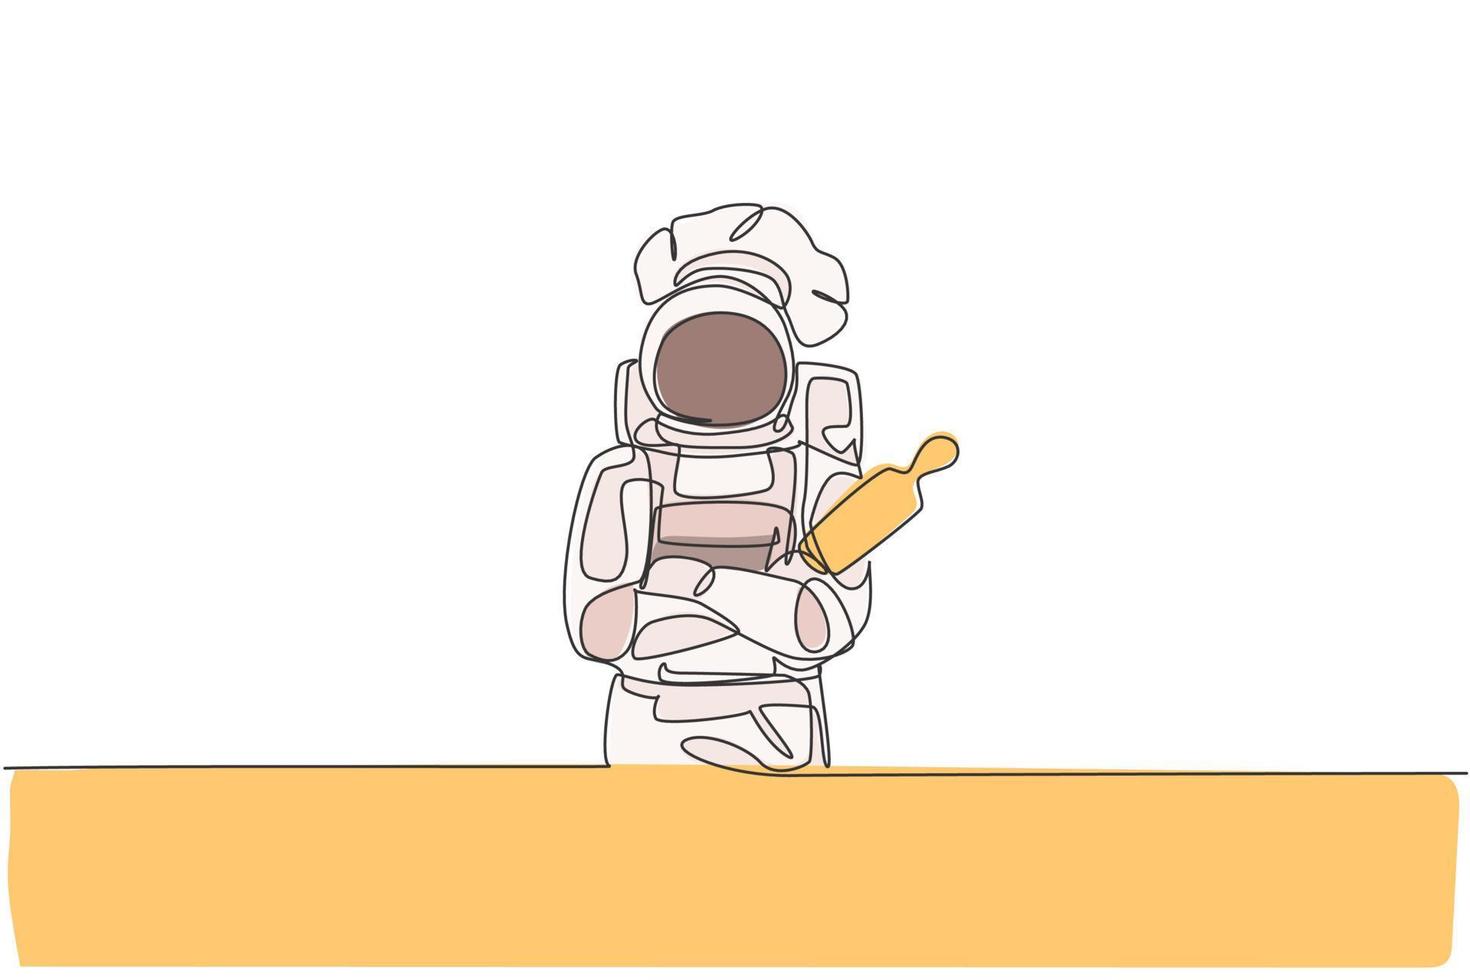 einzelne durchgehende Strichzeichnung des Astronautenkochs hält Nudelholz und kreuzt seine Hand auf der Brust, Weltraumcafé. gesundes bäckereikonzept. trendige Grafikdesign-Vektorillustration mit einer Linie zeichnen vektor